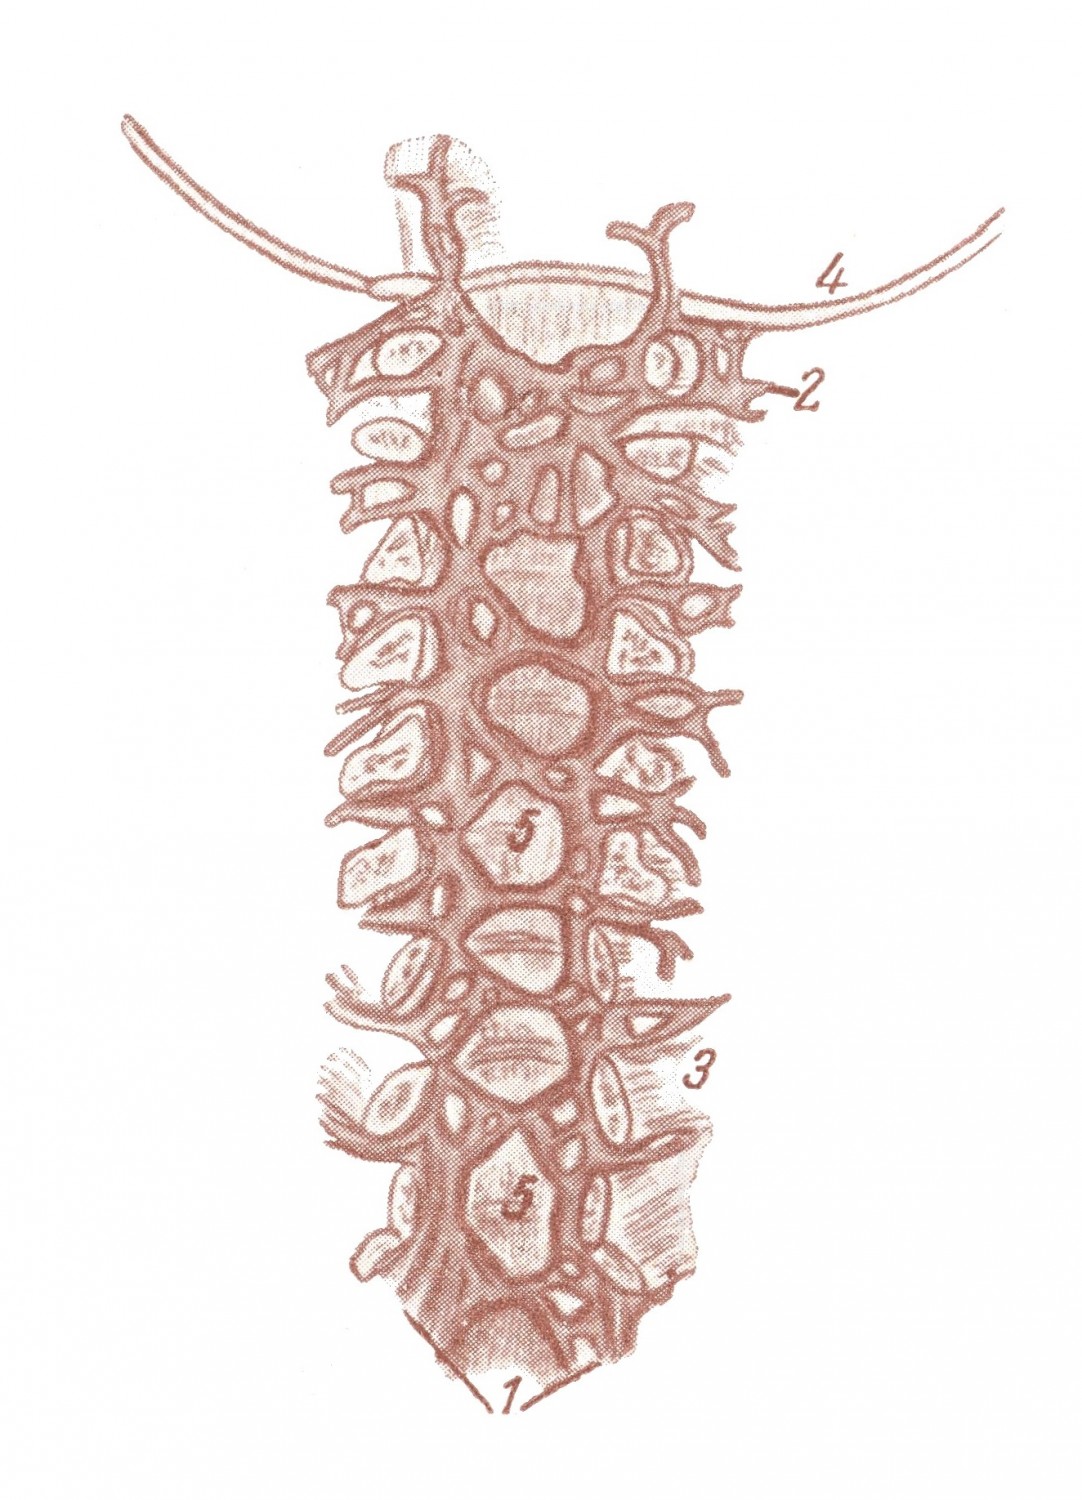 Передние внутренние сплетения вен позвоночного канала — plexus venosi vertebrales interni anteriores (видны) — после вскрытия позвоночного канала фронтальным разрезом и удаления спинного мозга и его оболочек. (По Breschet) 